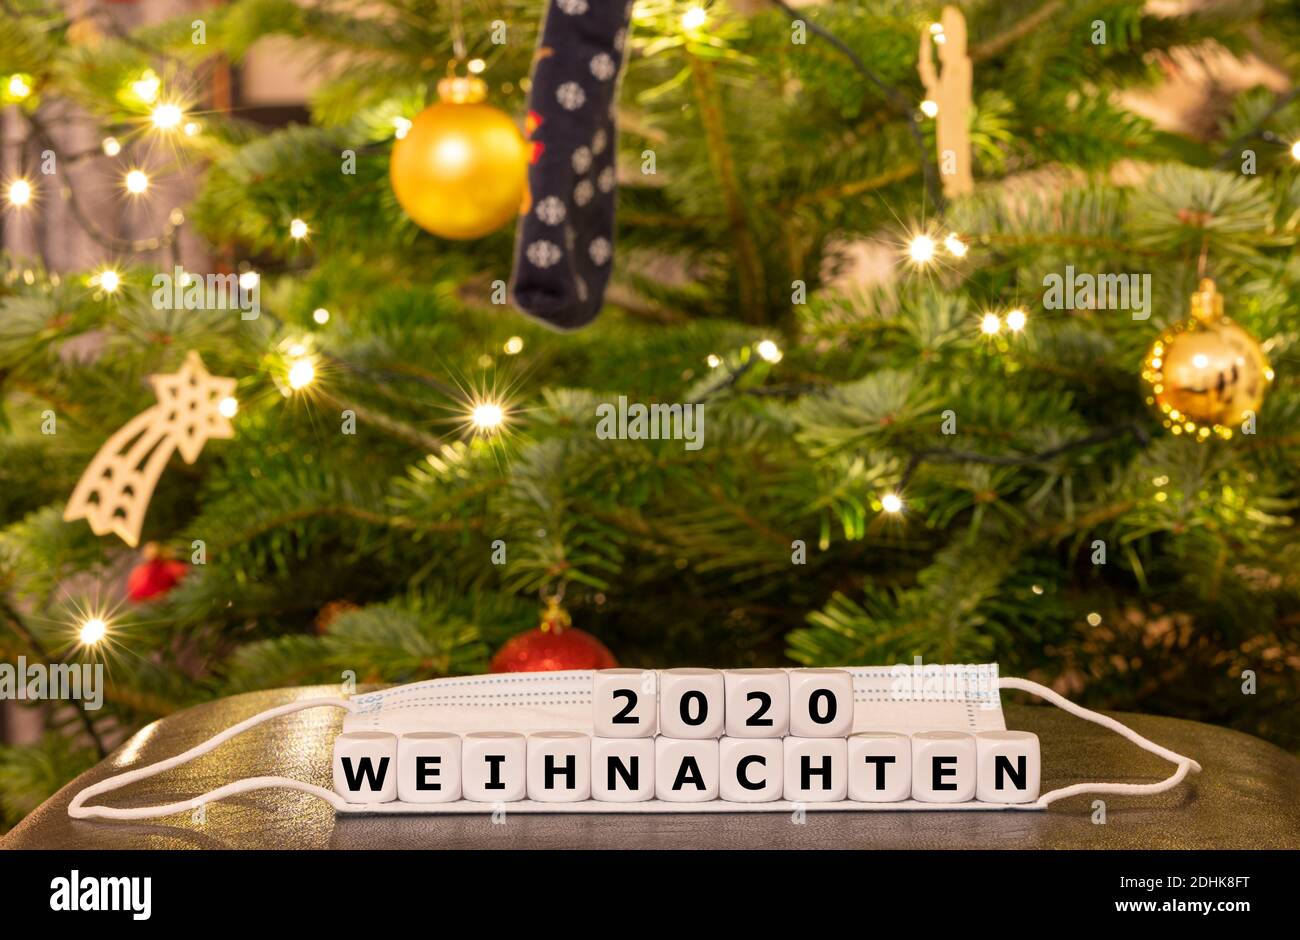 Symbol für die Weihnachtszeit während der Corona-Pandemie. Würfel bilden den deutschen Ausdruck 'Weihnachten 2020' (Weihnachten 2020) auf einer Gesichtsmaske Stockfoto